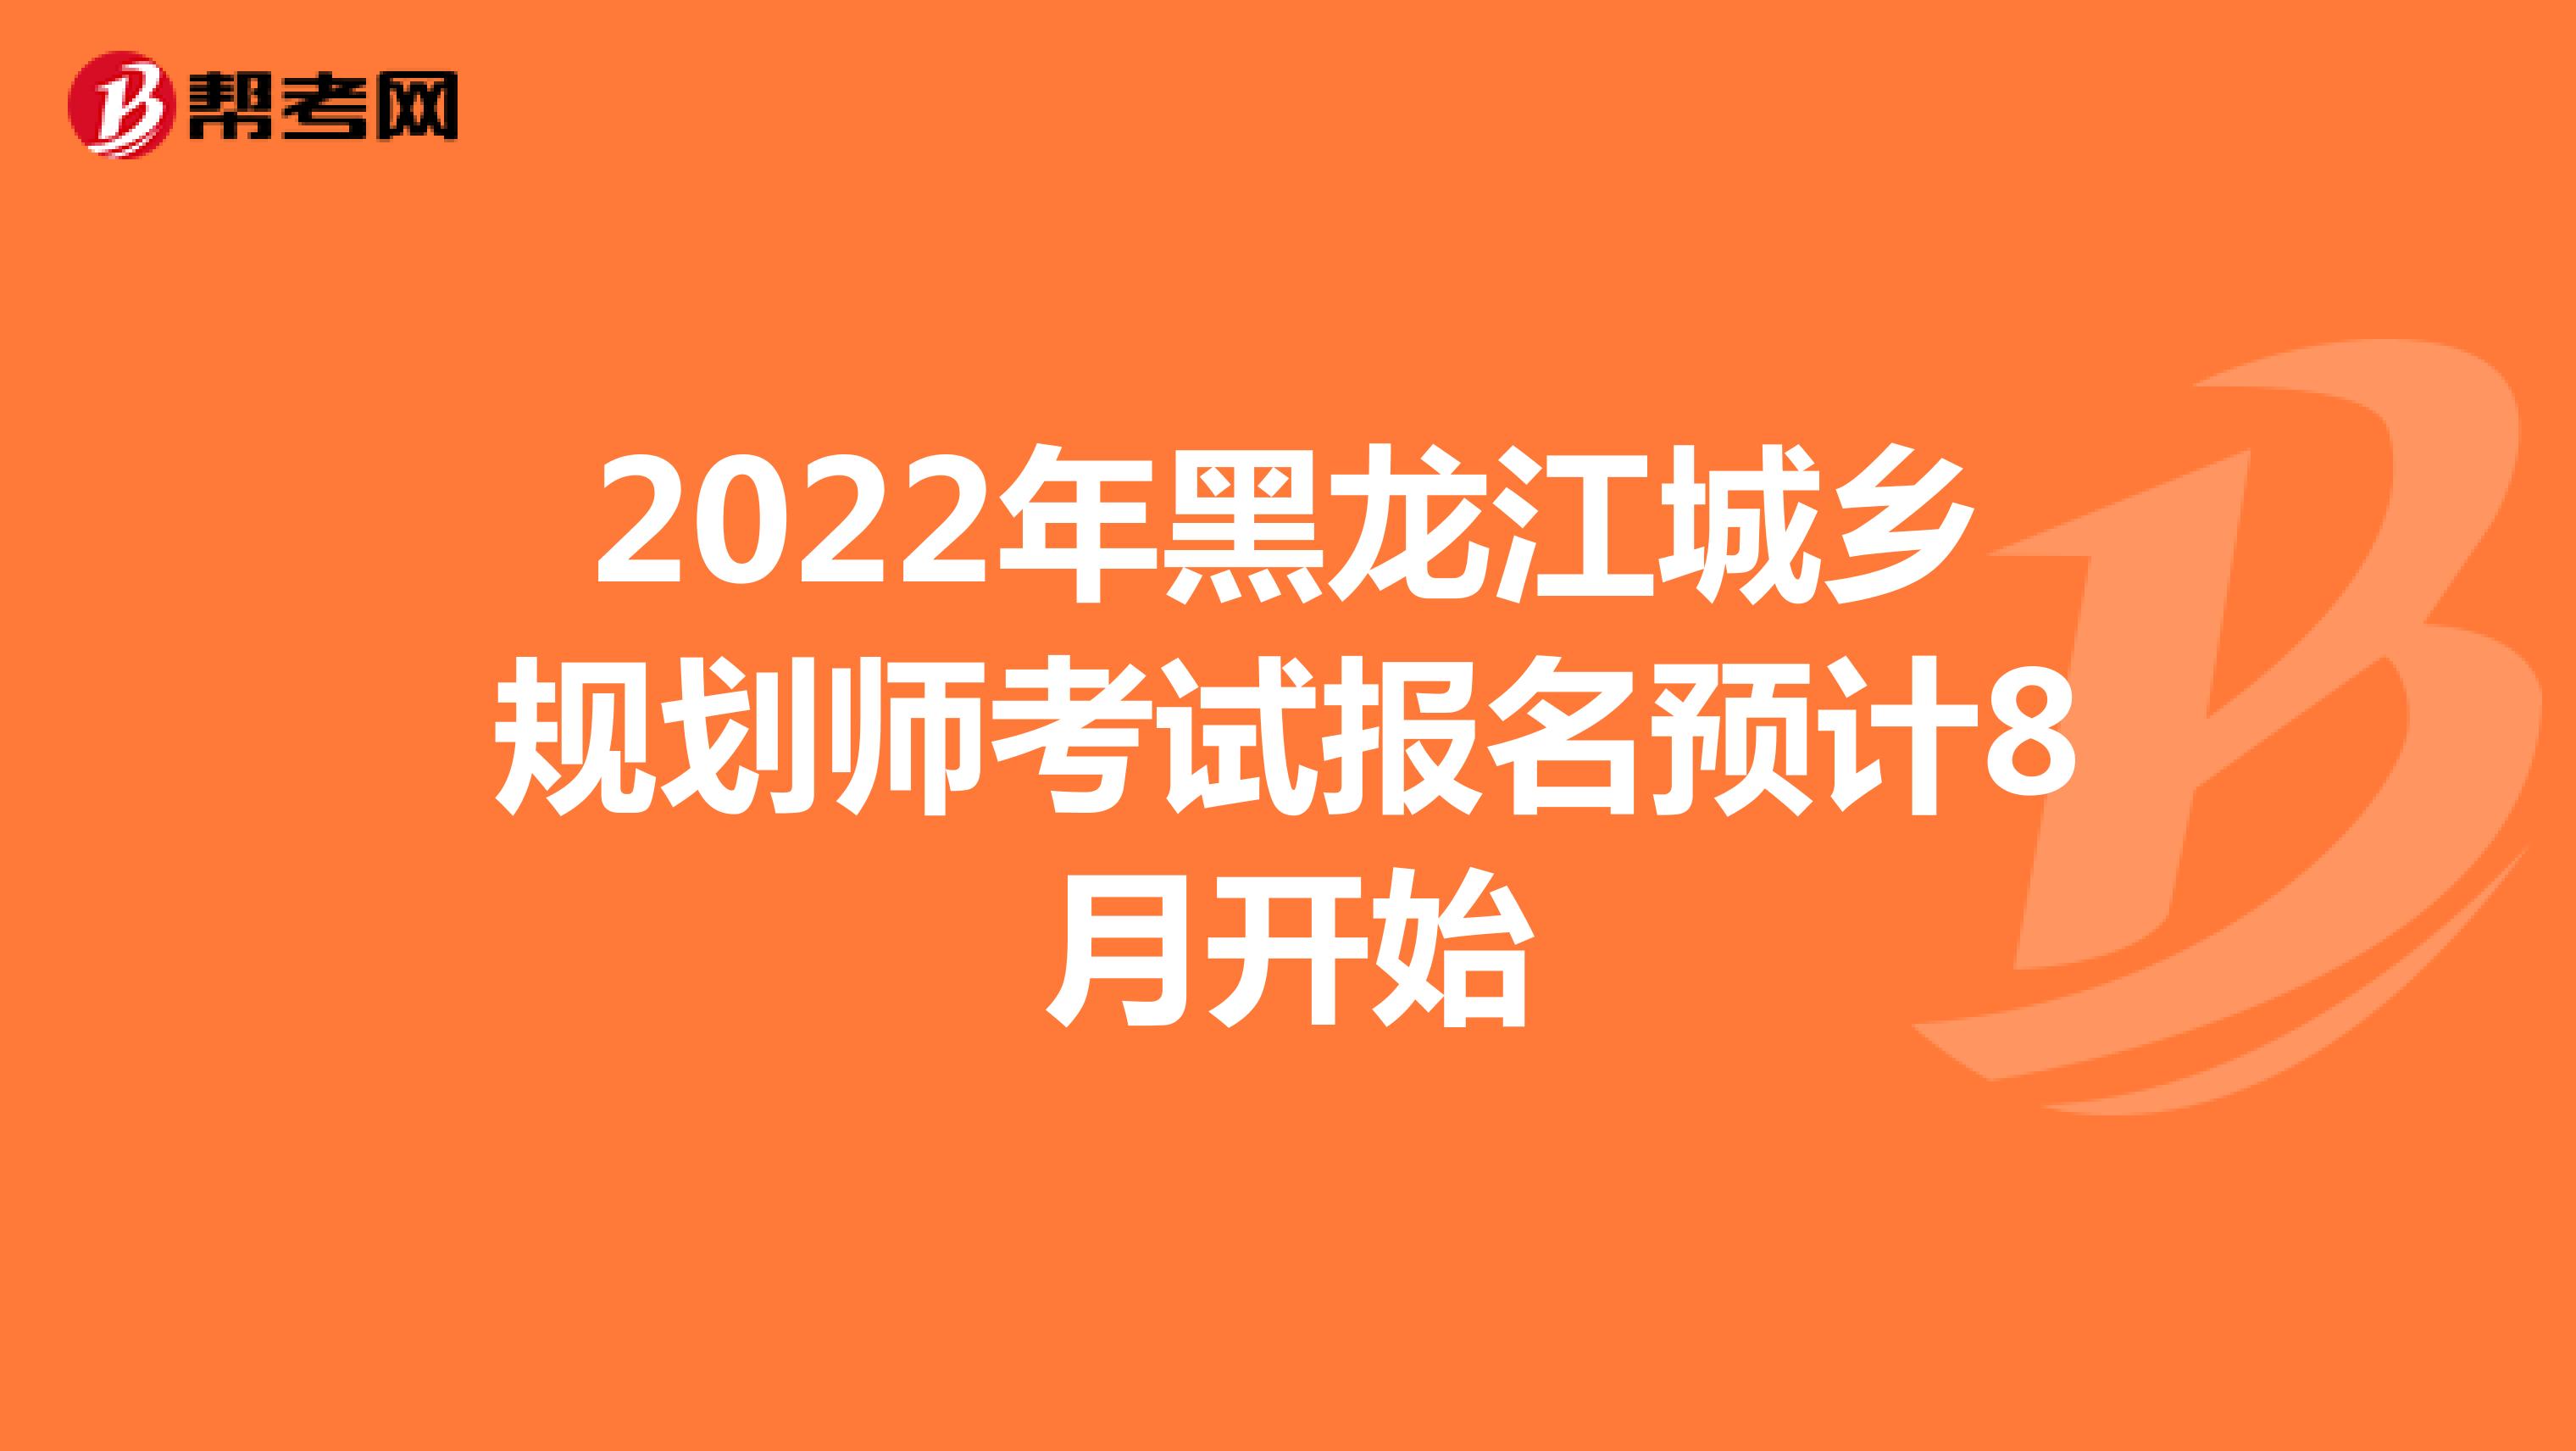 2022年黑龙江城乡规划师考试报名预计8月开始